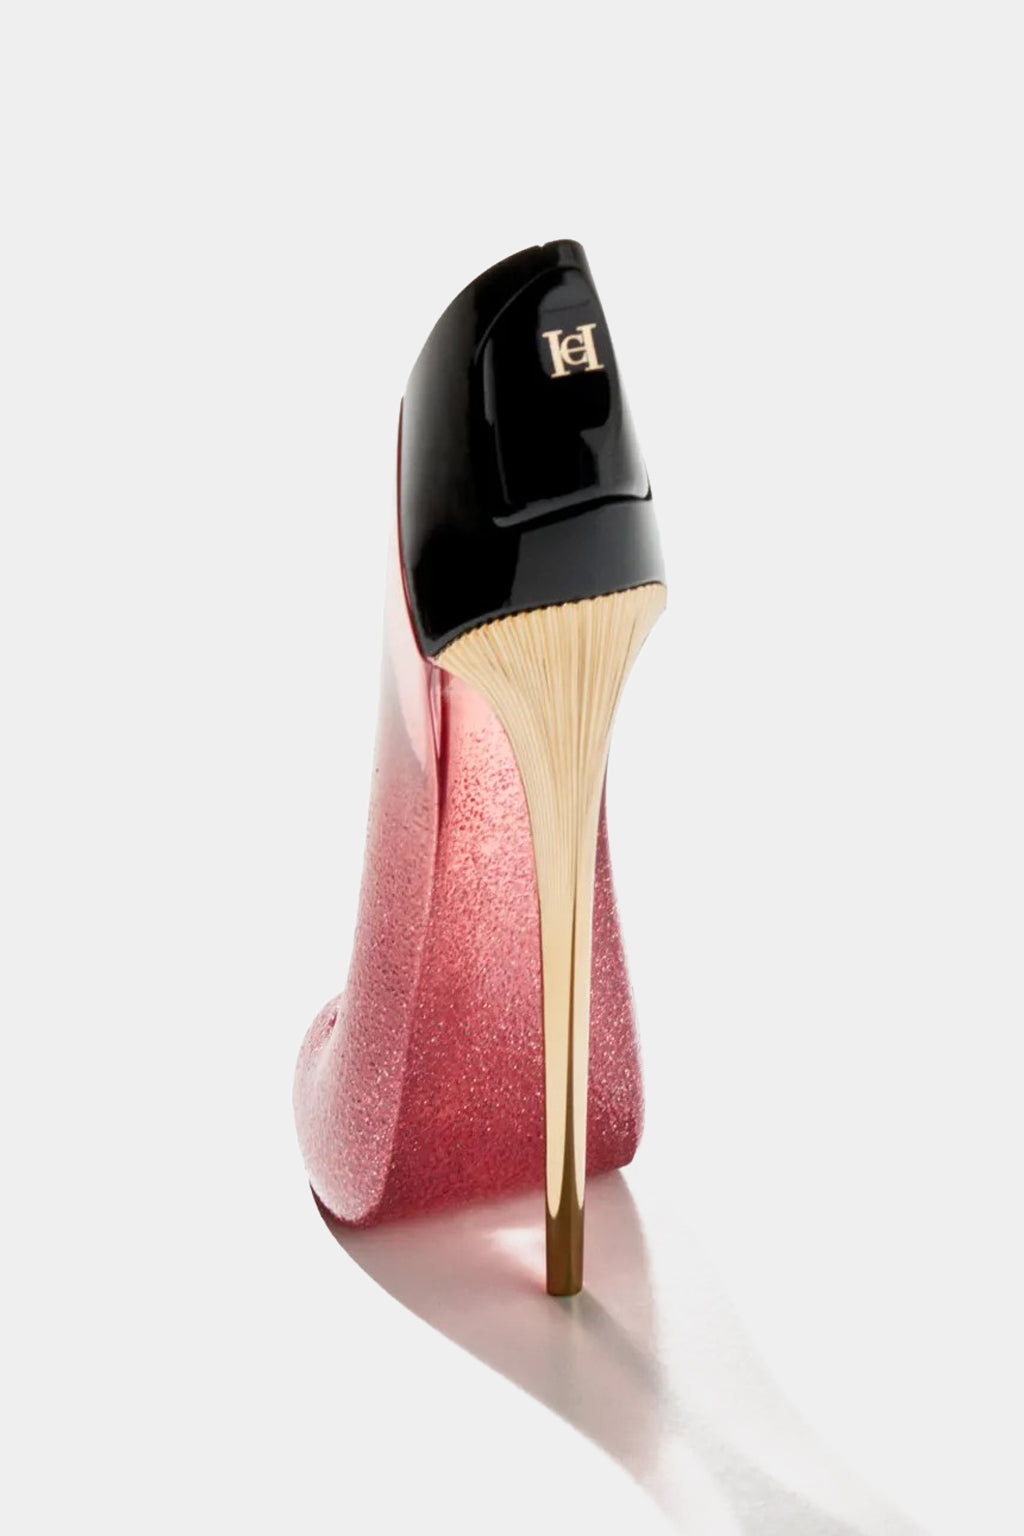 Carolina Herrera - Very Good Girl Glam Perfume